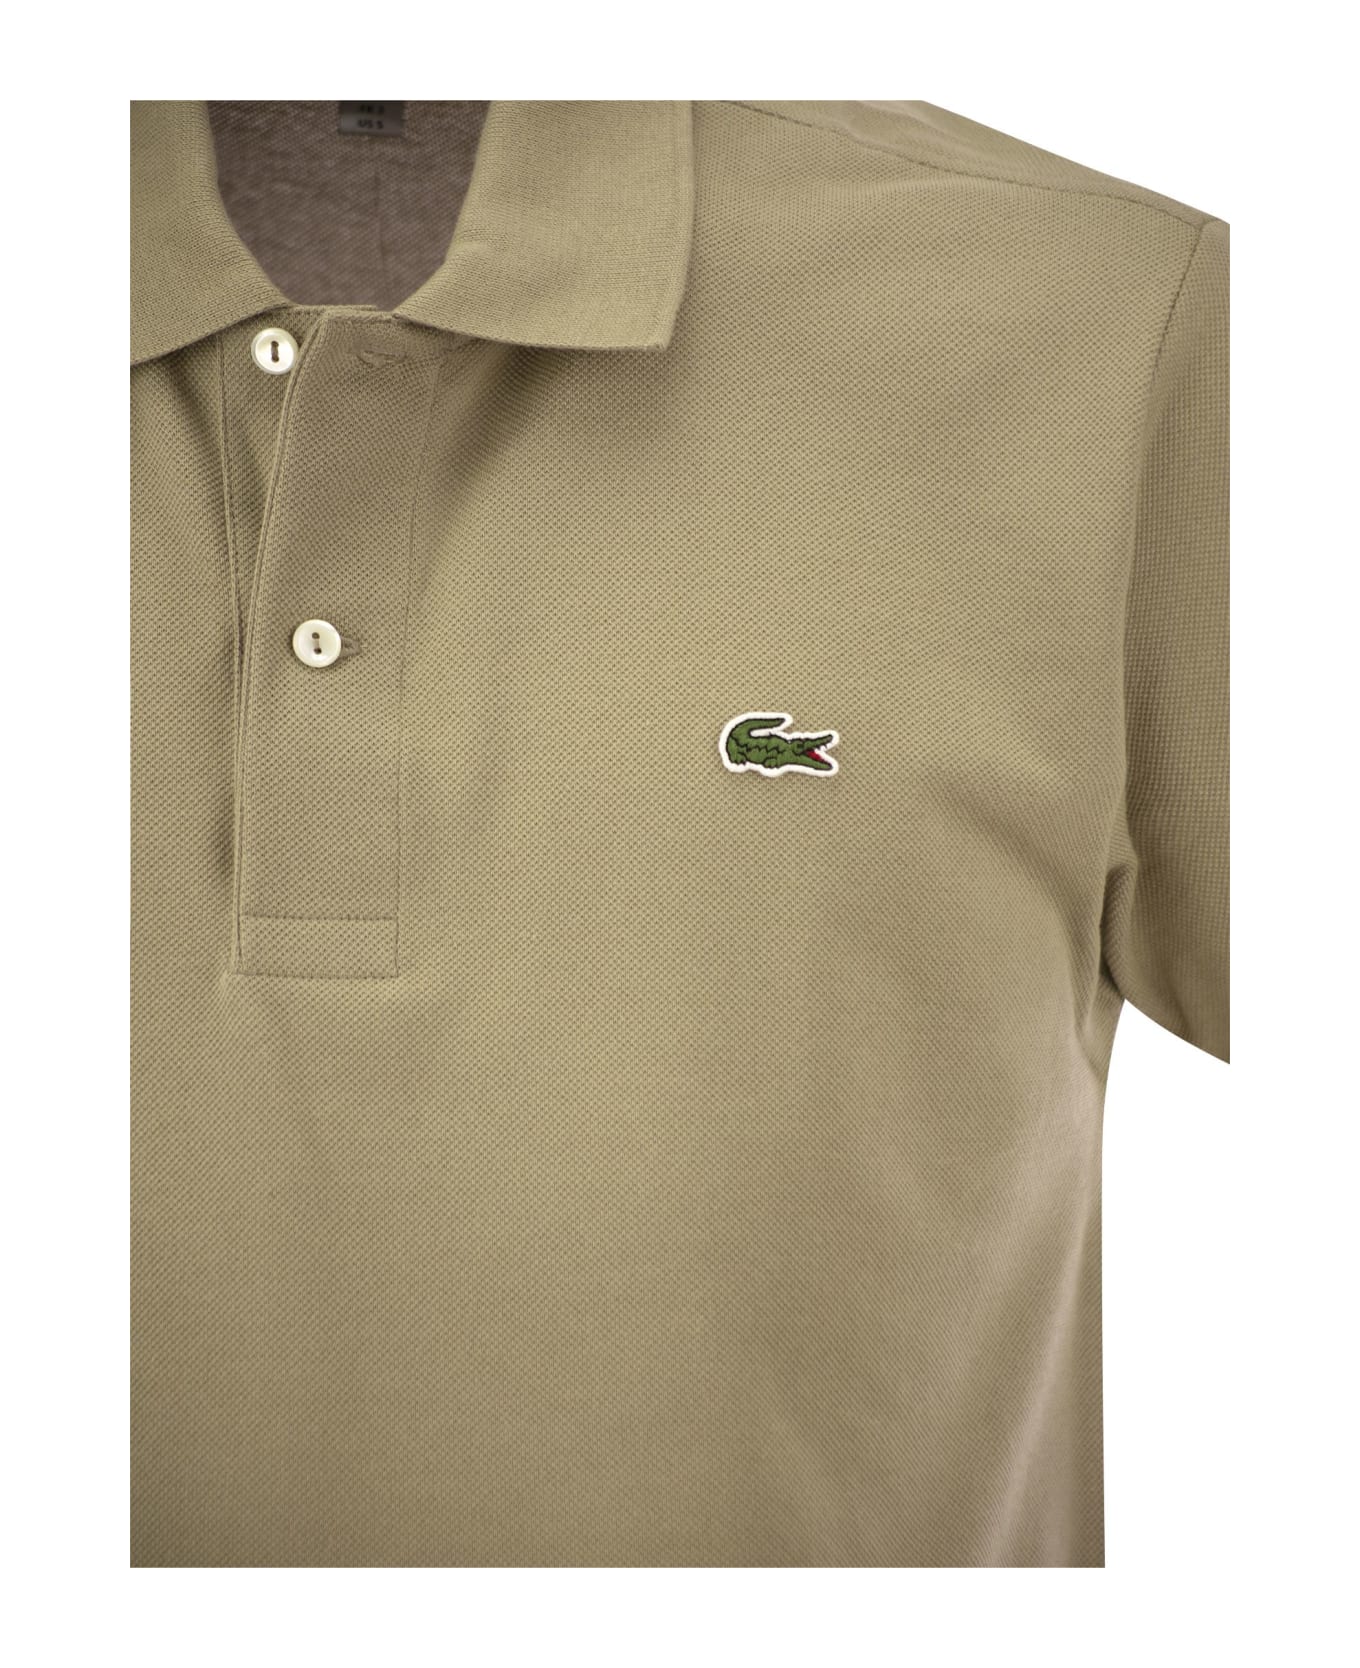 Lacoste Classic Fit Cotton Pique Polo Shirt - Beige